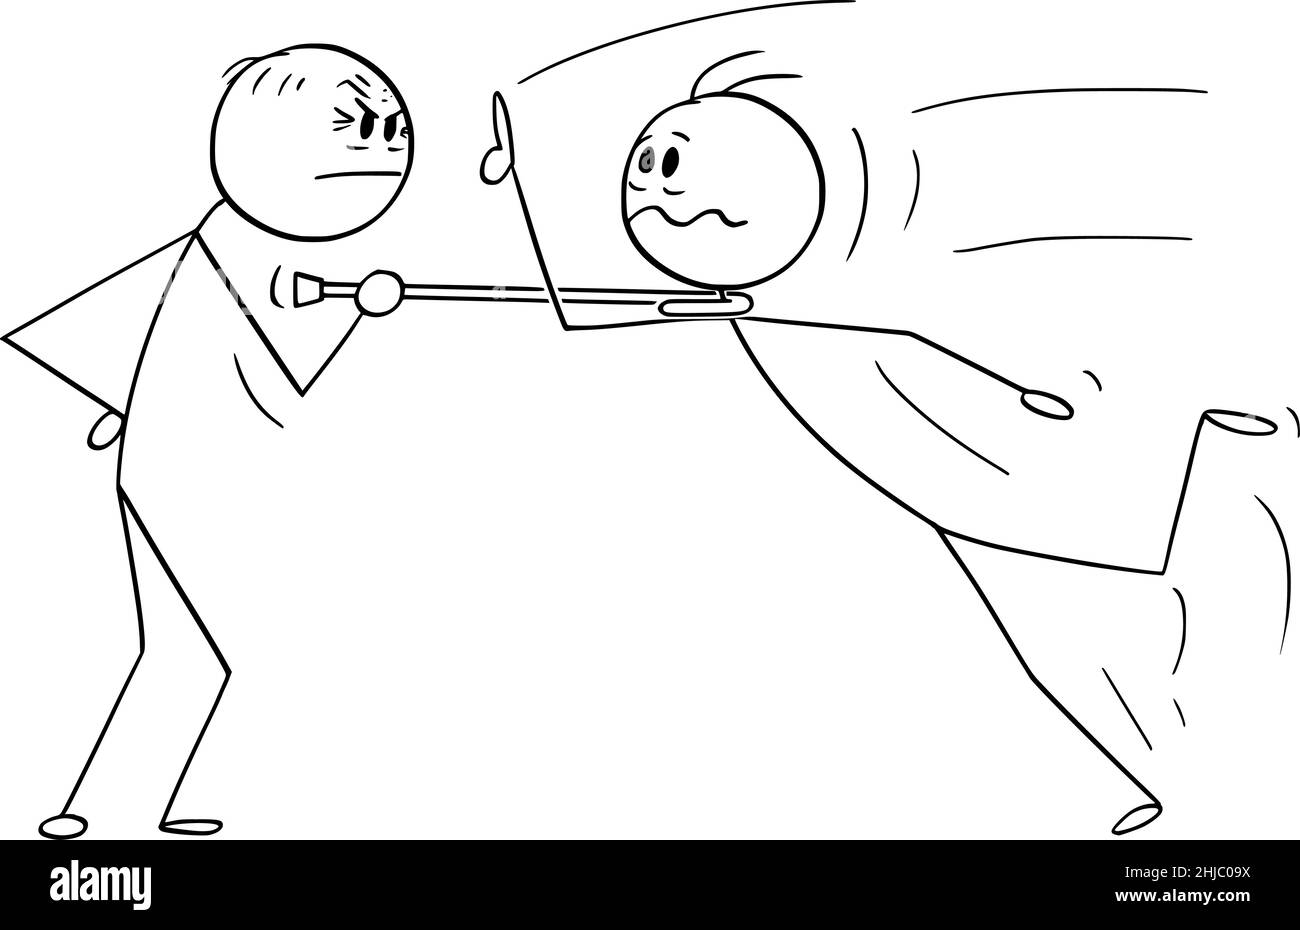 Combat, conflit ou confrontation de la personne âgée et de la jeune, le bâton de dessin animé Illustration Illustration de Vecteur